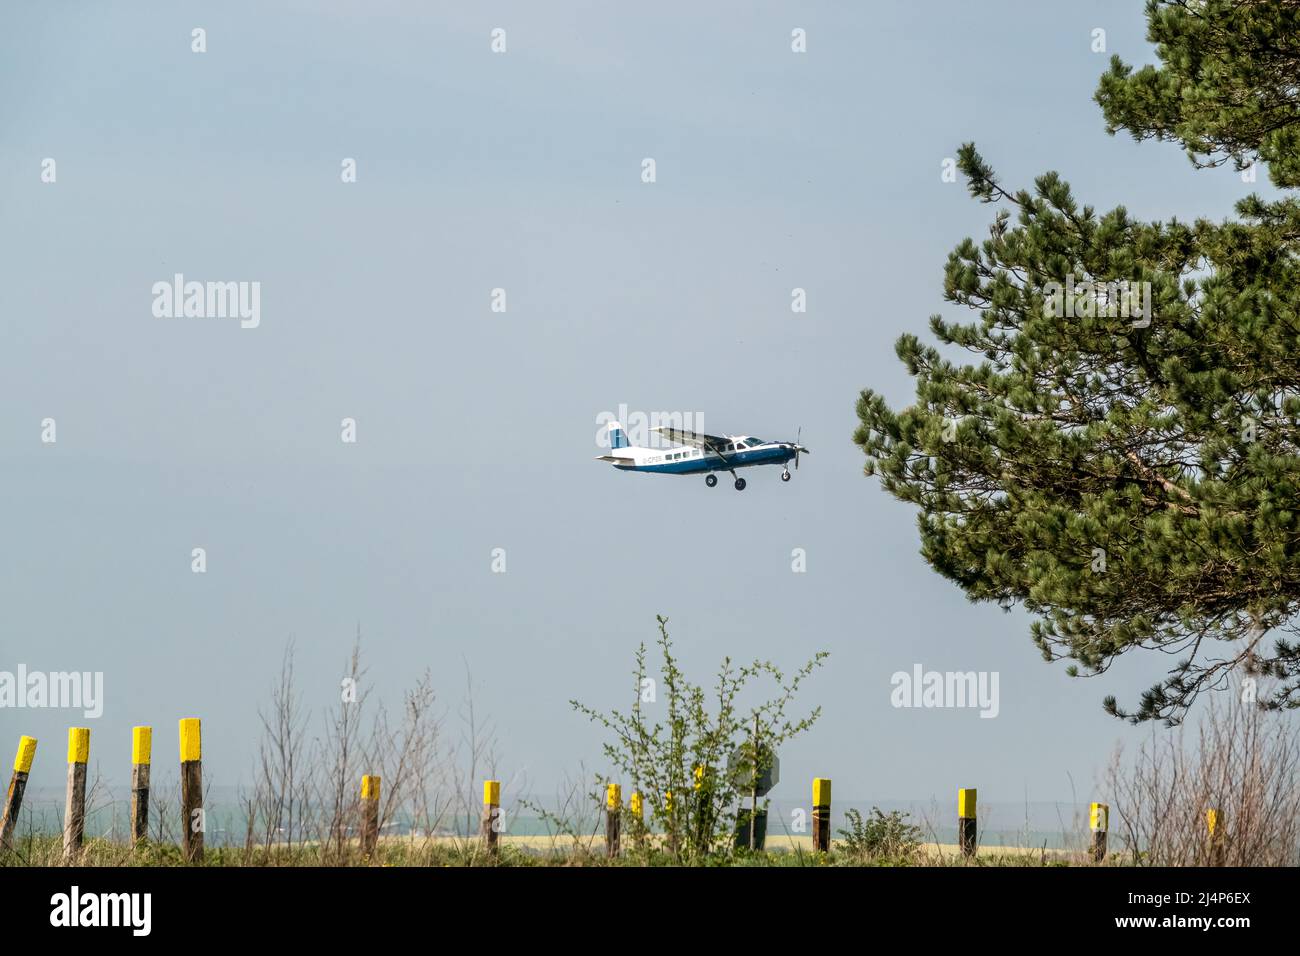 Cessna 208b Grand Caravan G-CPSS light aircraft ascending from a grass runway takeoff Stock Photo